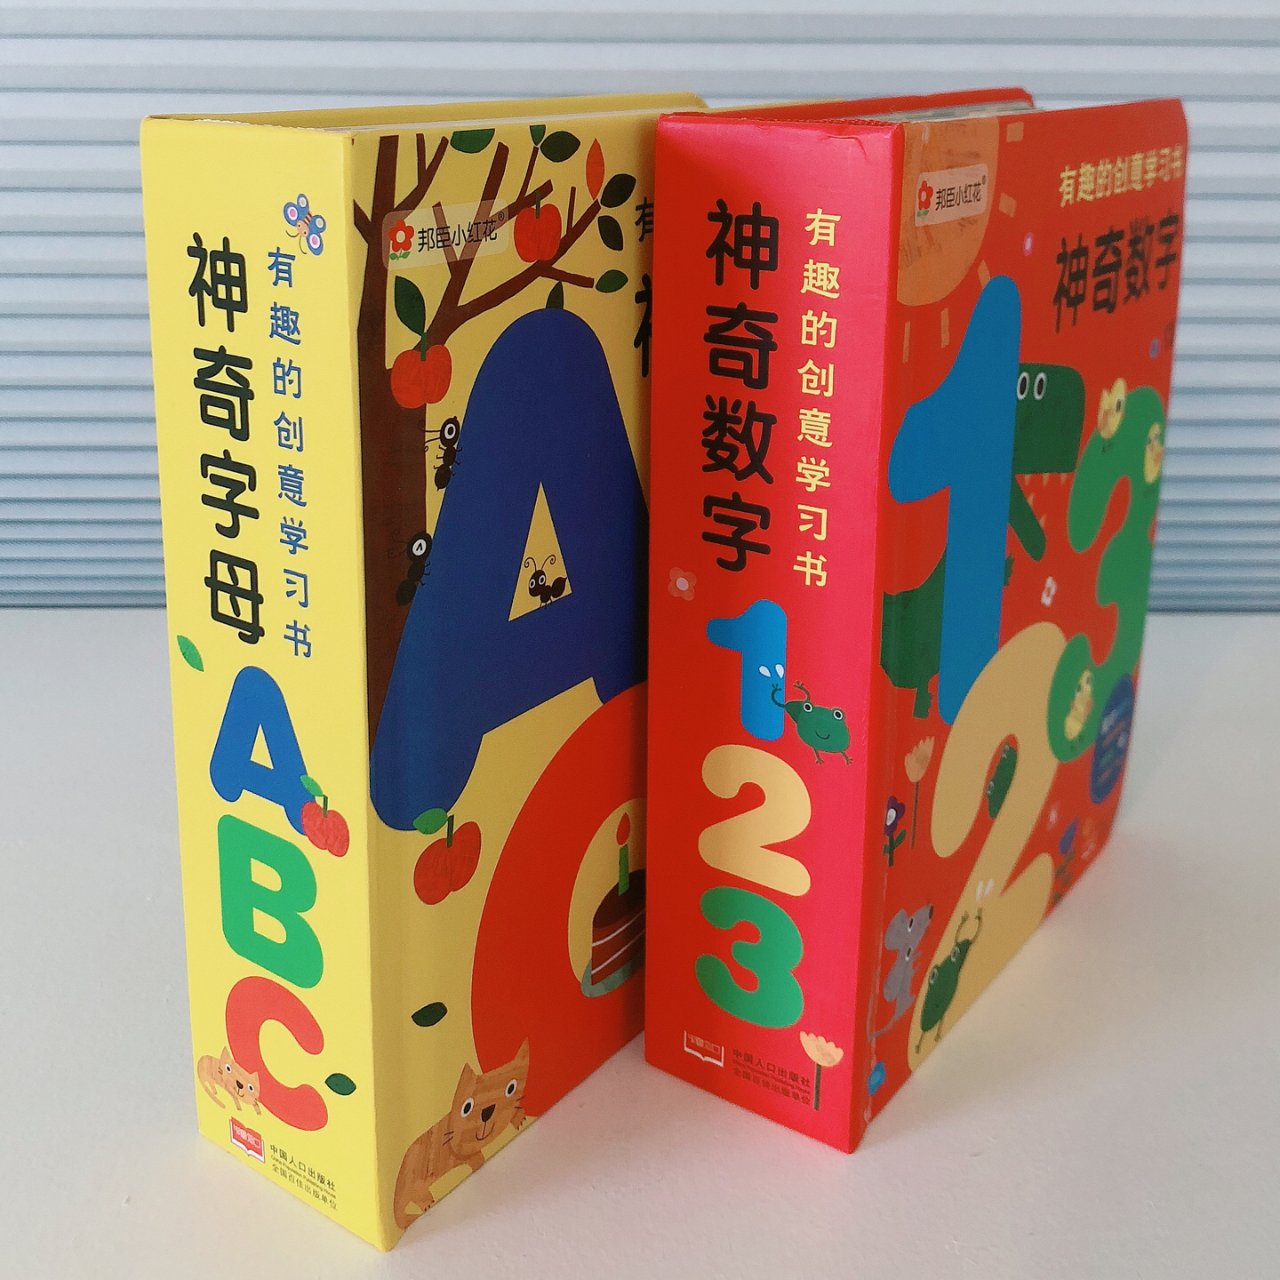 京东图书,有趣的创意学习书,神奇数字123,神奇字母ABC